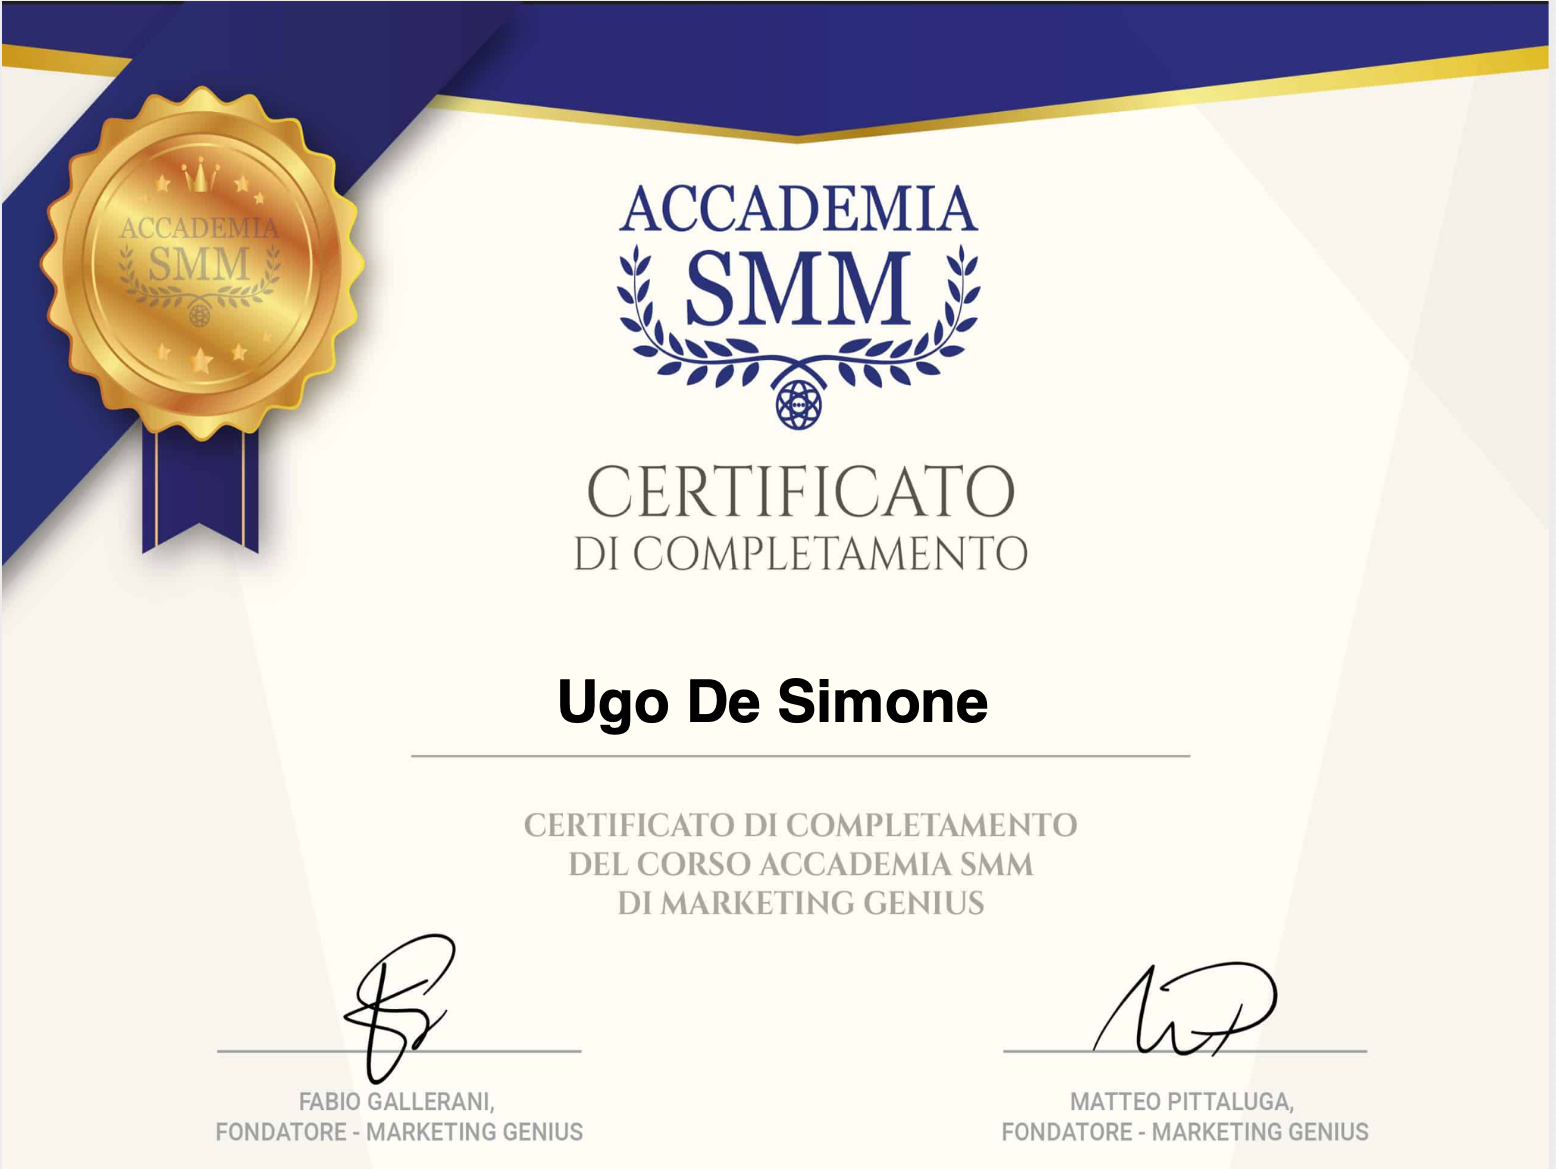 Certificato di completamento Accademia smm